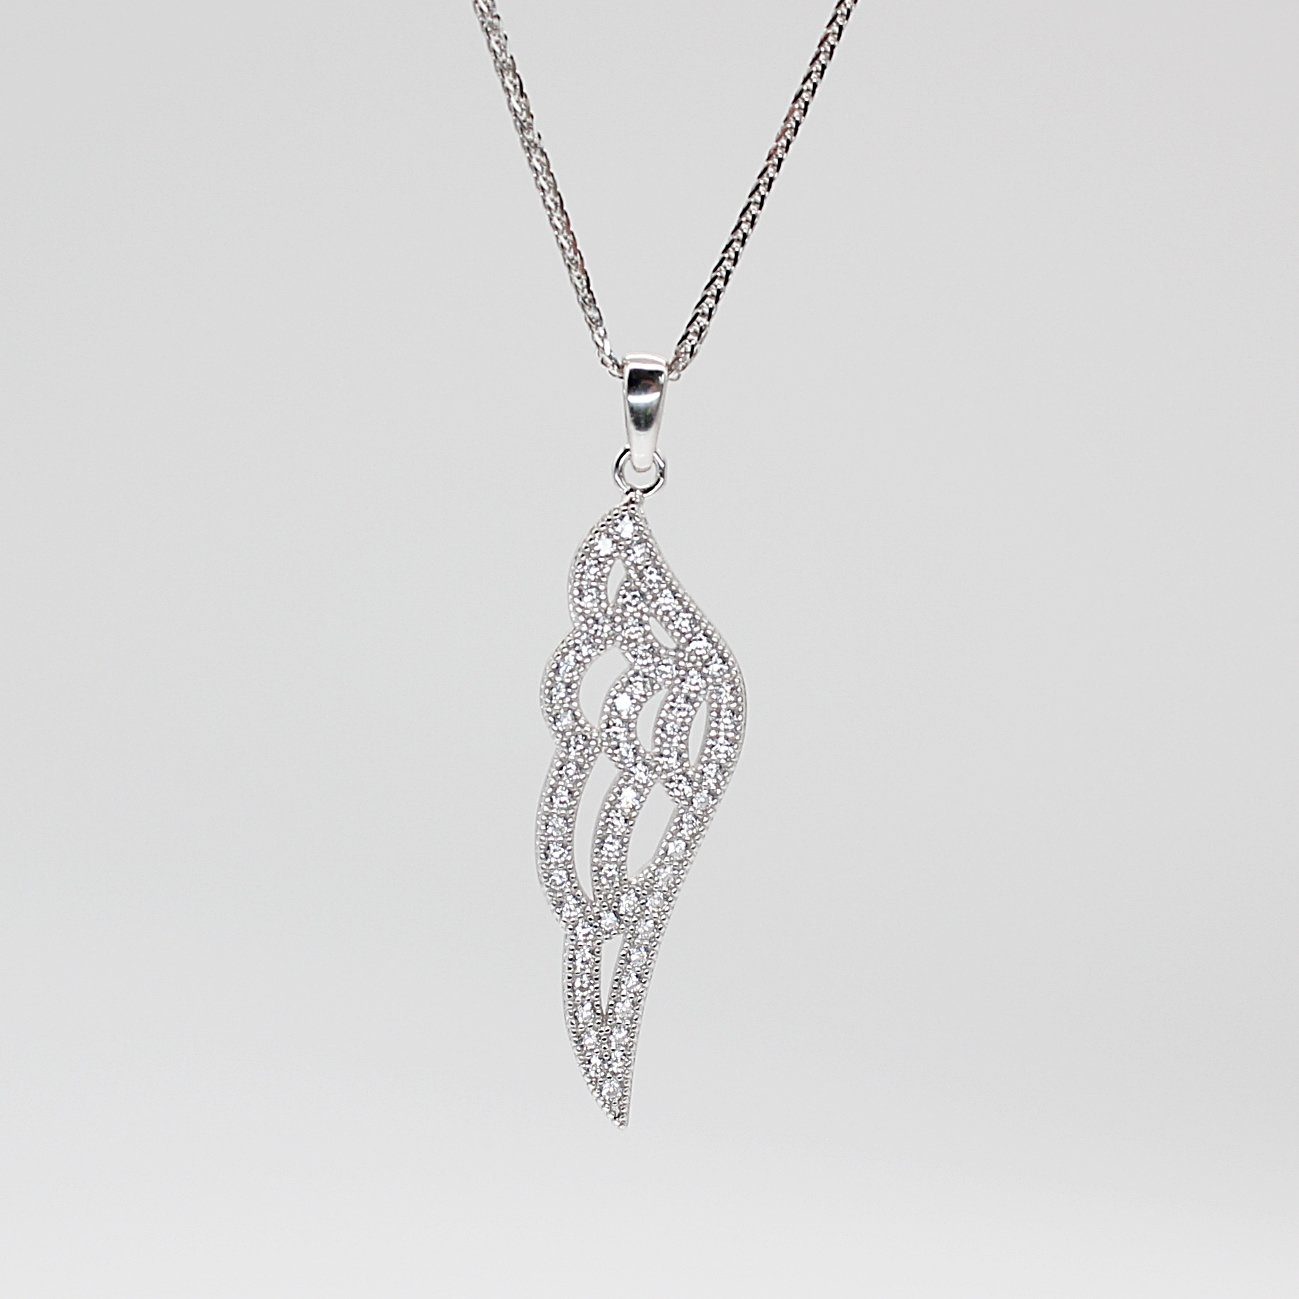 ELLAWIL Silberkette Kette mit Engelsflügel Anhänger Damen Zirkonia Halskette Mädchen (Kettenlänge 45 cm, Sterling Silber 925), inklusive Geschenkschachtel